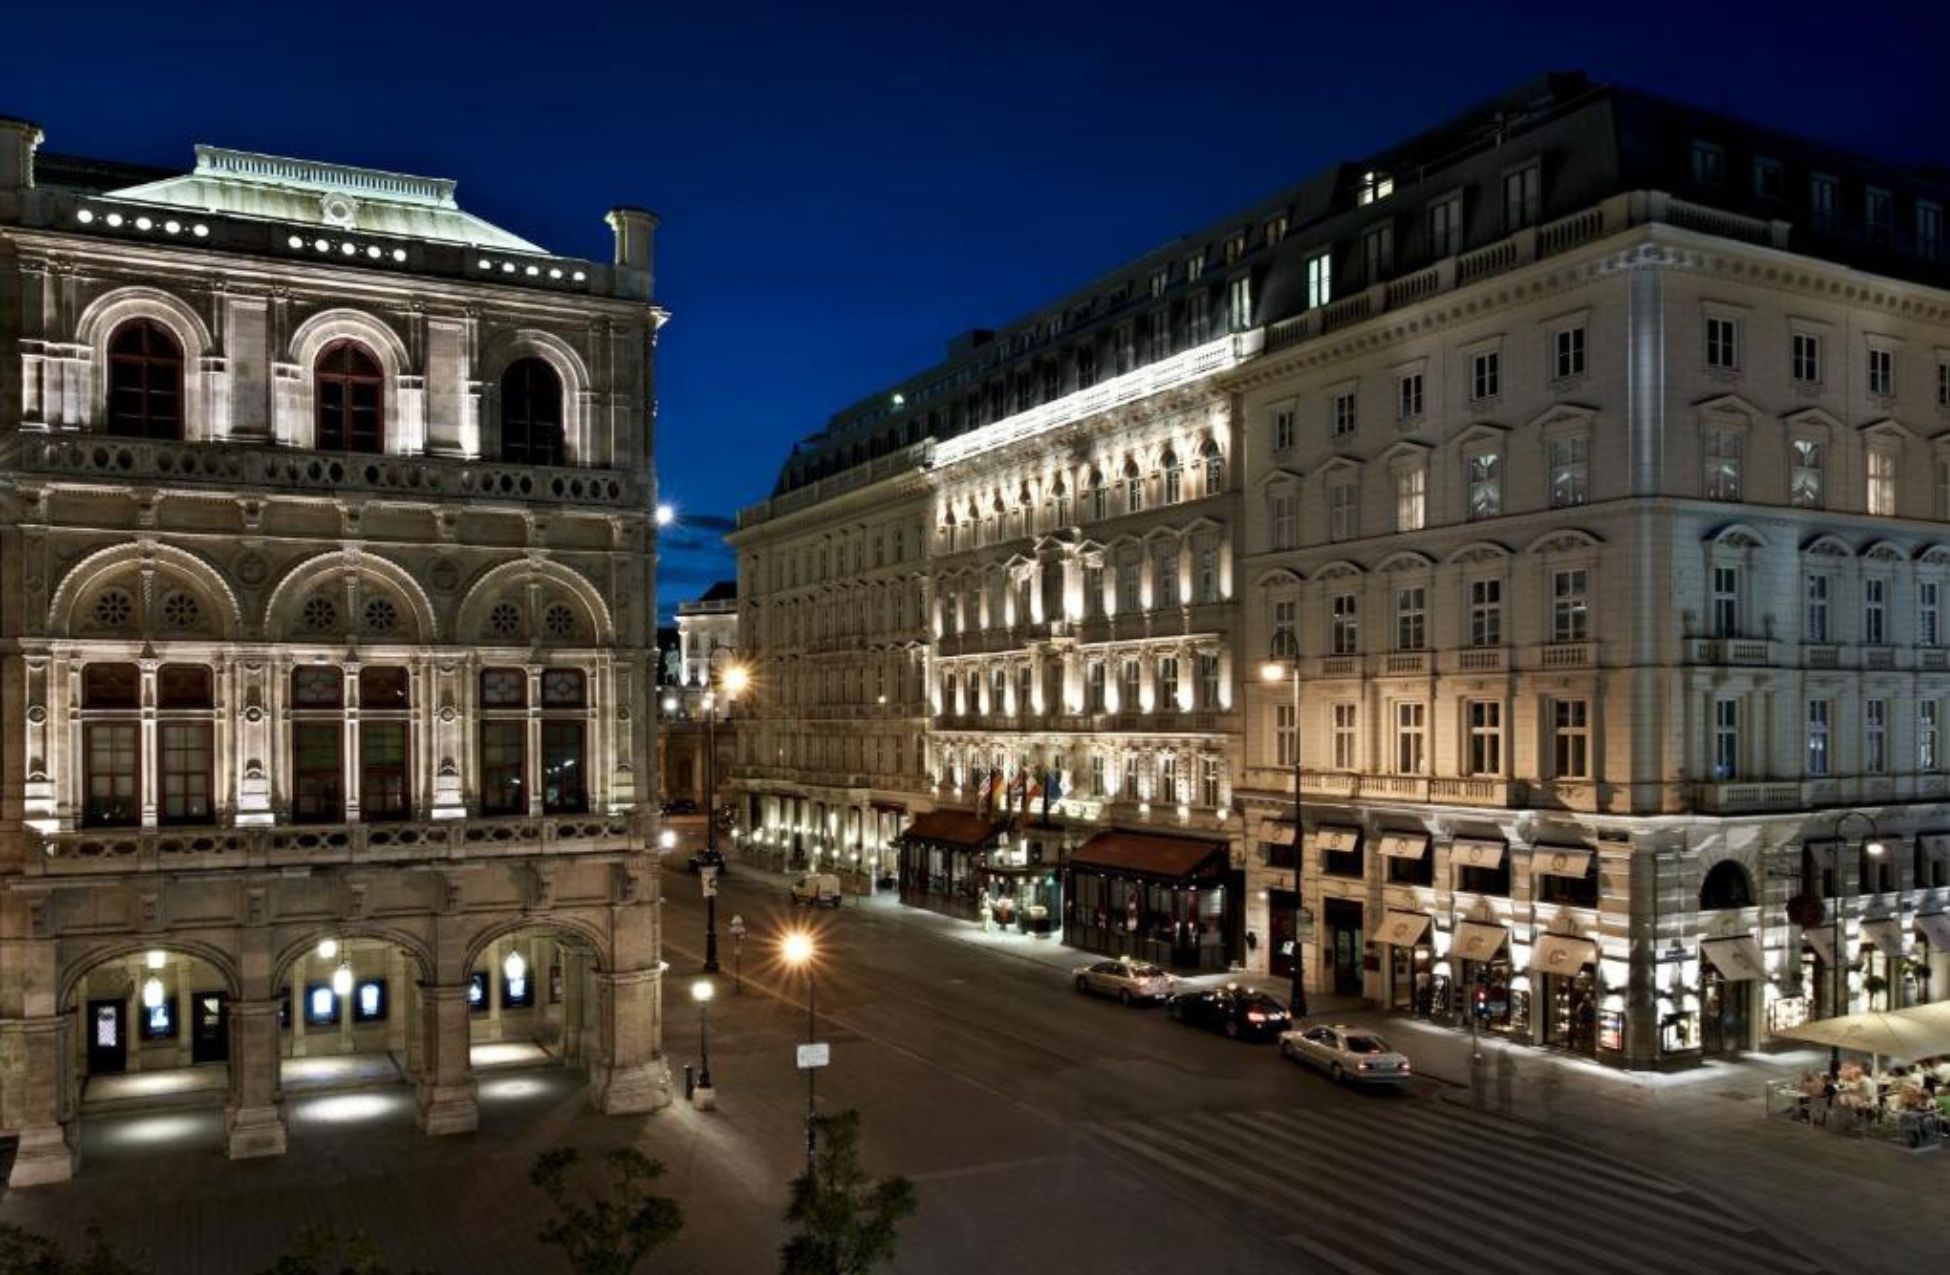 Hotel Sacher - Best Hotels In Vienna